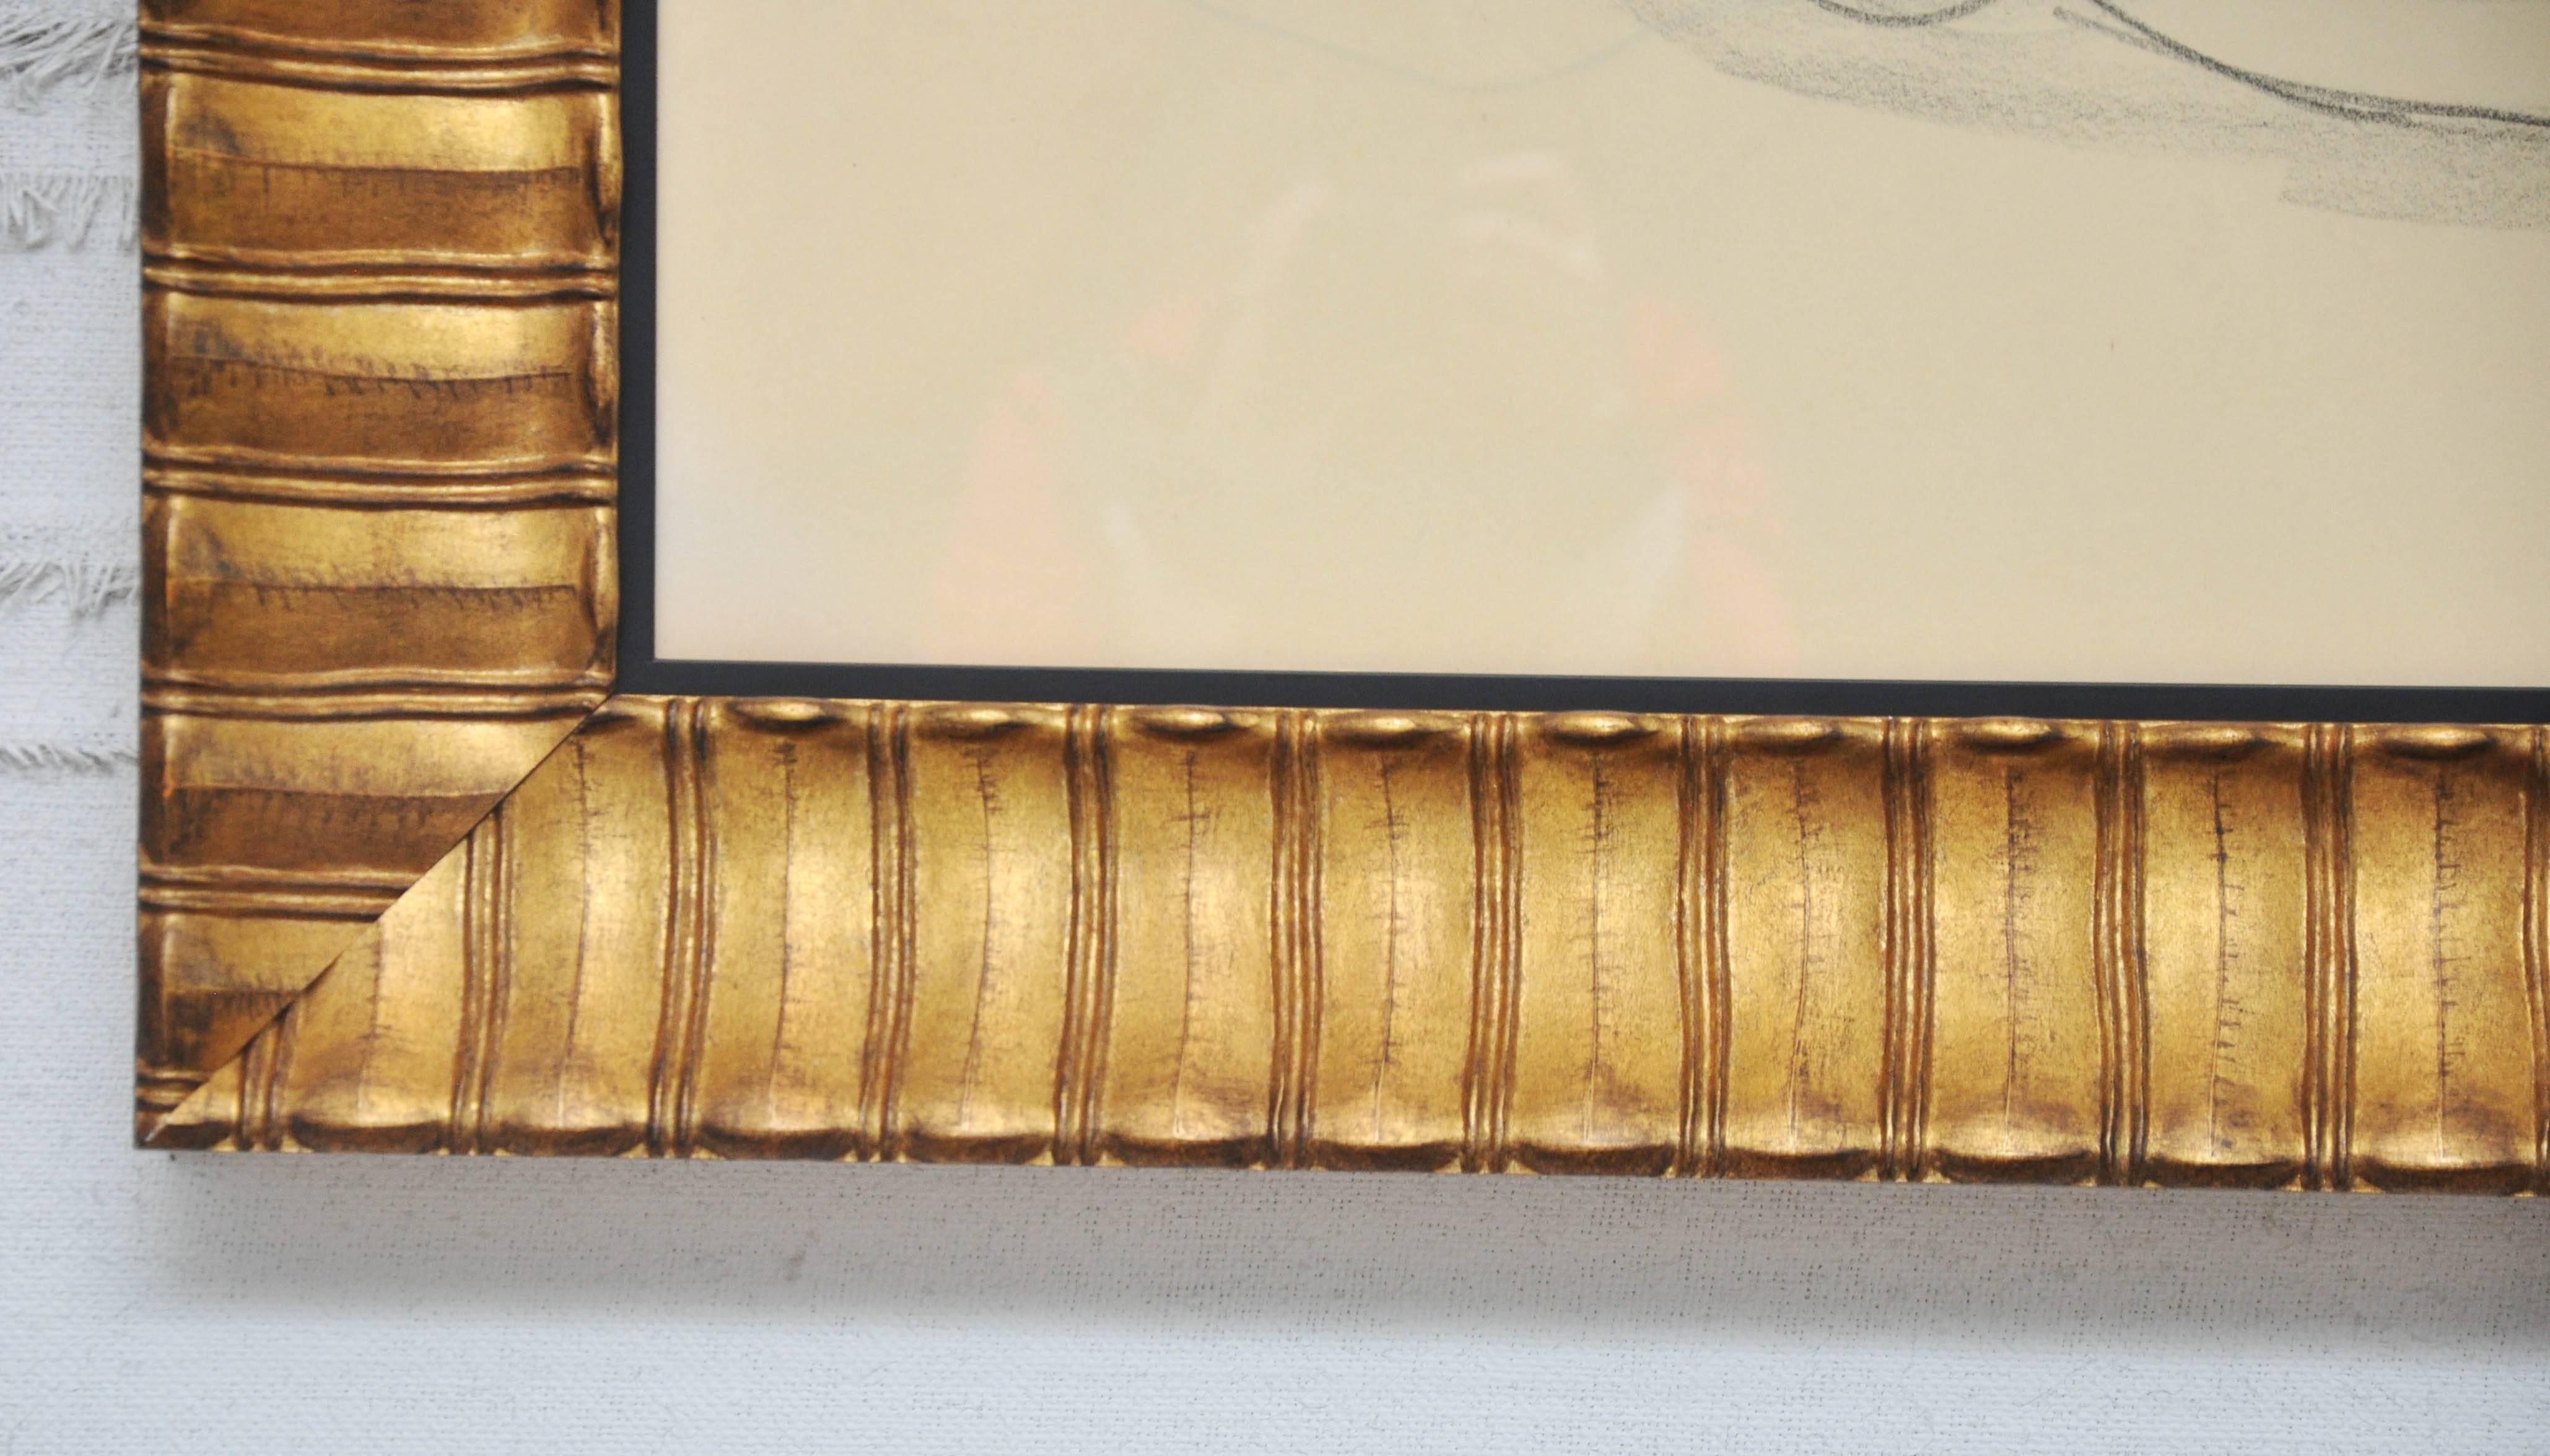 Aktstrichzeichnung aus dem 20. Jahrhundert. Skizze mit Kohle auf Papier. Kürzlich gerahmt in handbemaltem vergoldetem Rahmen.

Abmessungen: 32